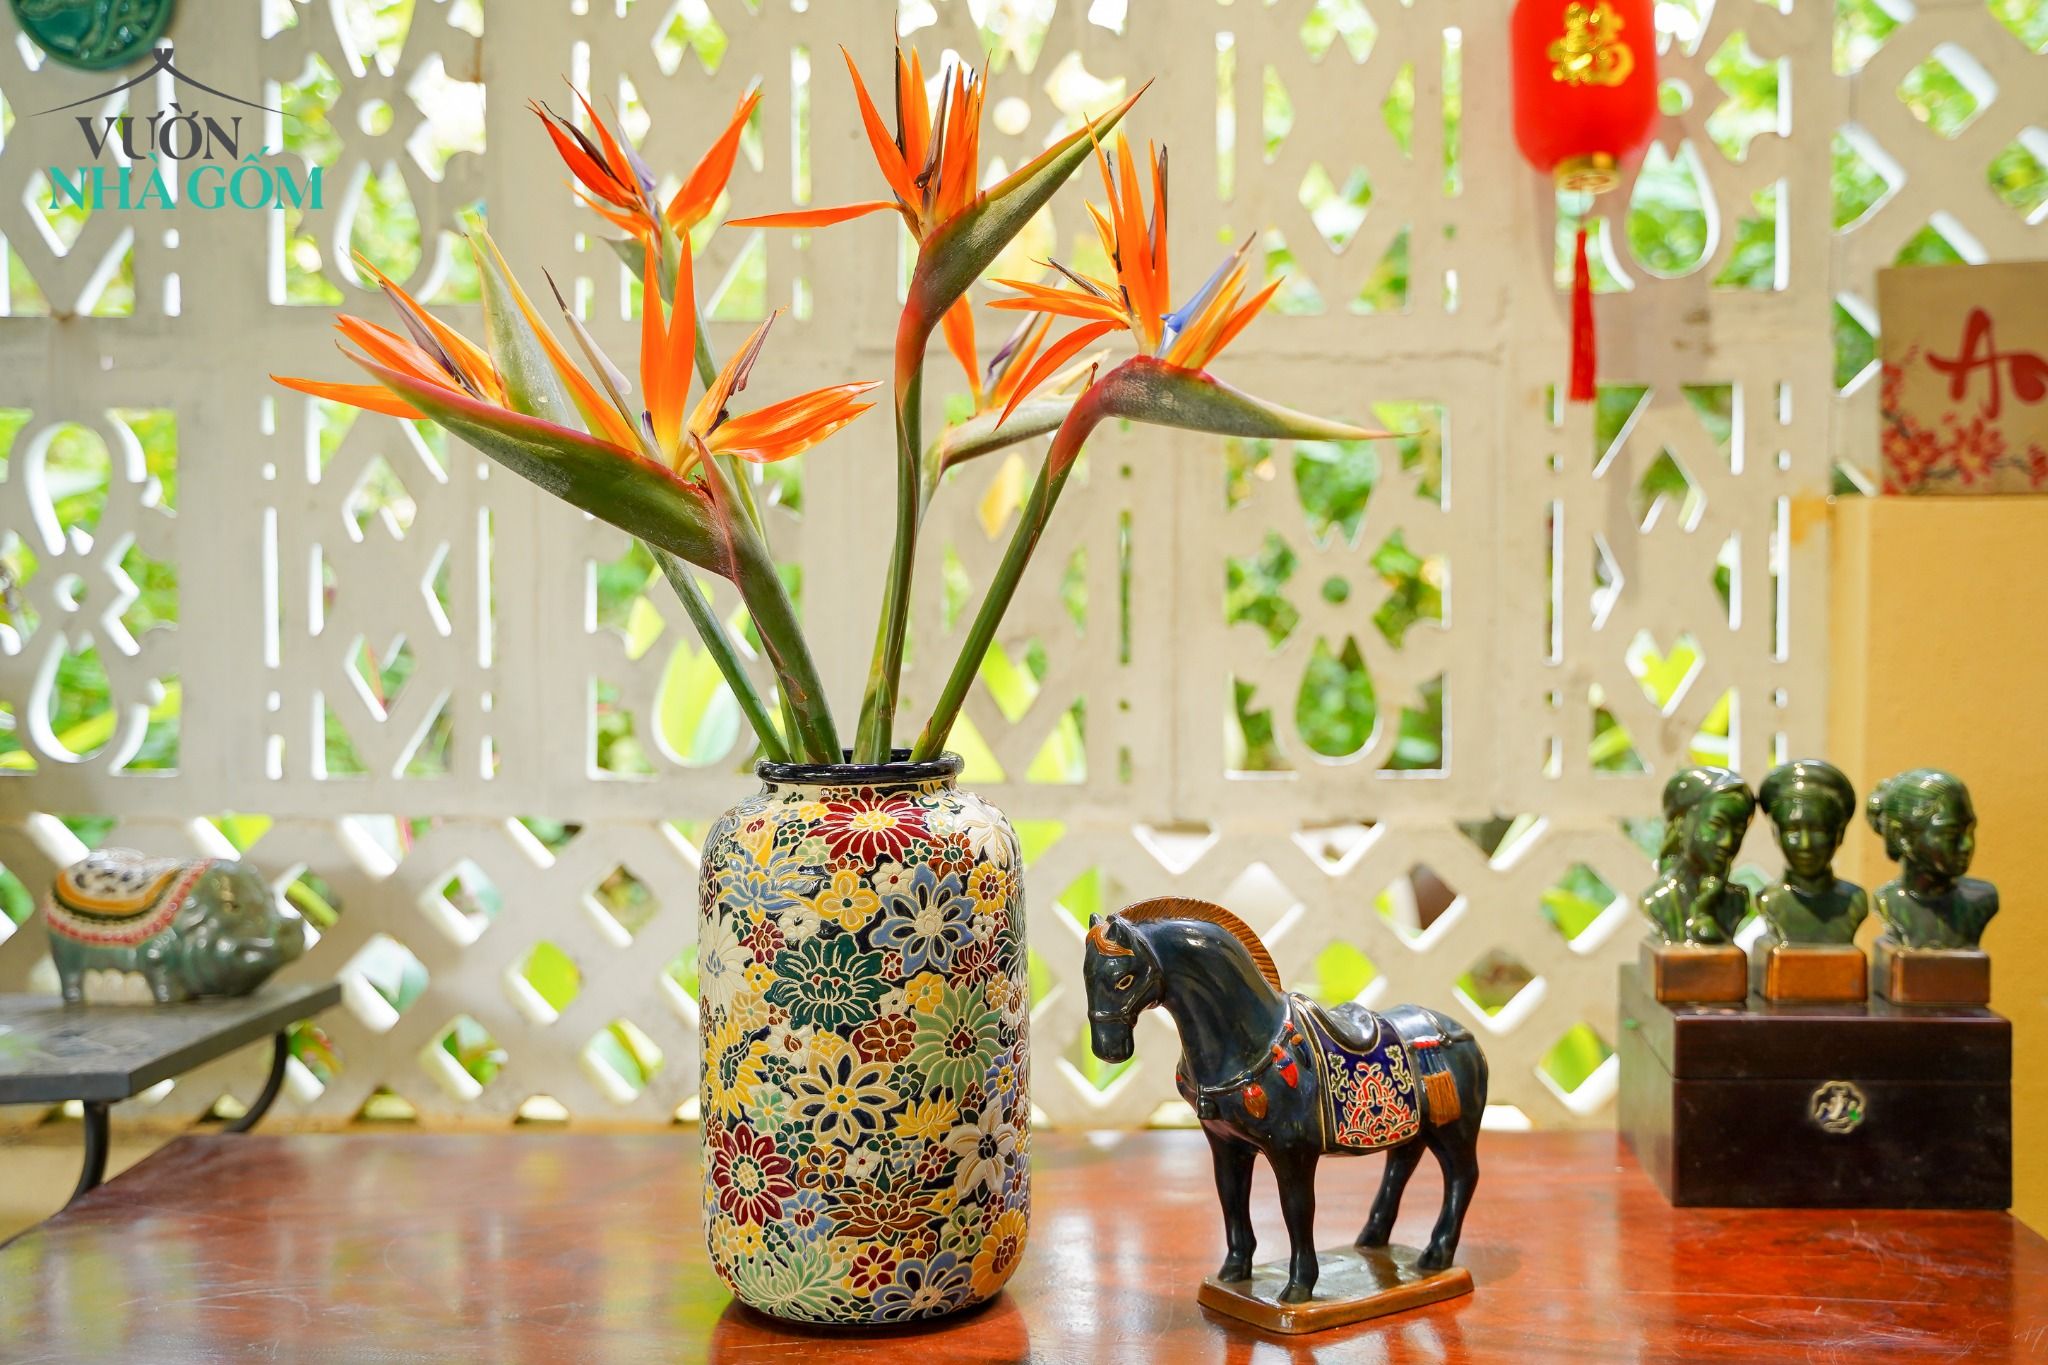  Bình khắc Bách Hoa thủ công, cắm hoa, trang trí Tết, gốm Thủ Biên, C25 x R15cm x M10 cm 